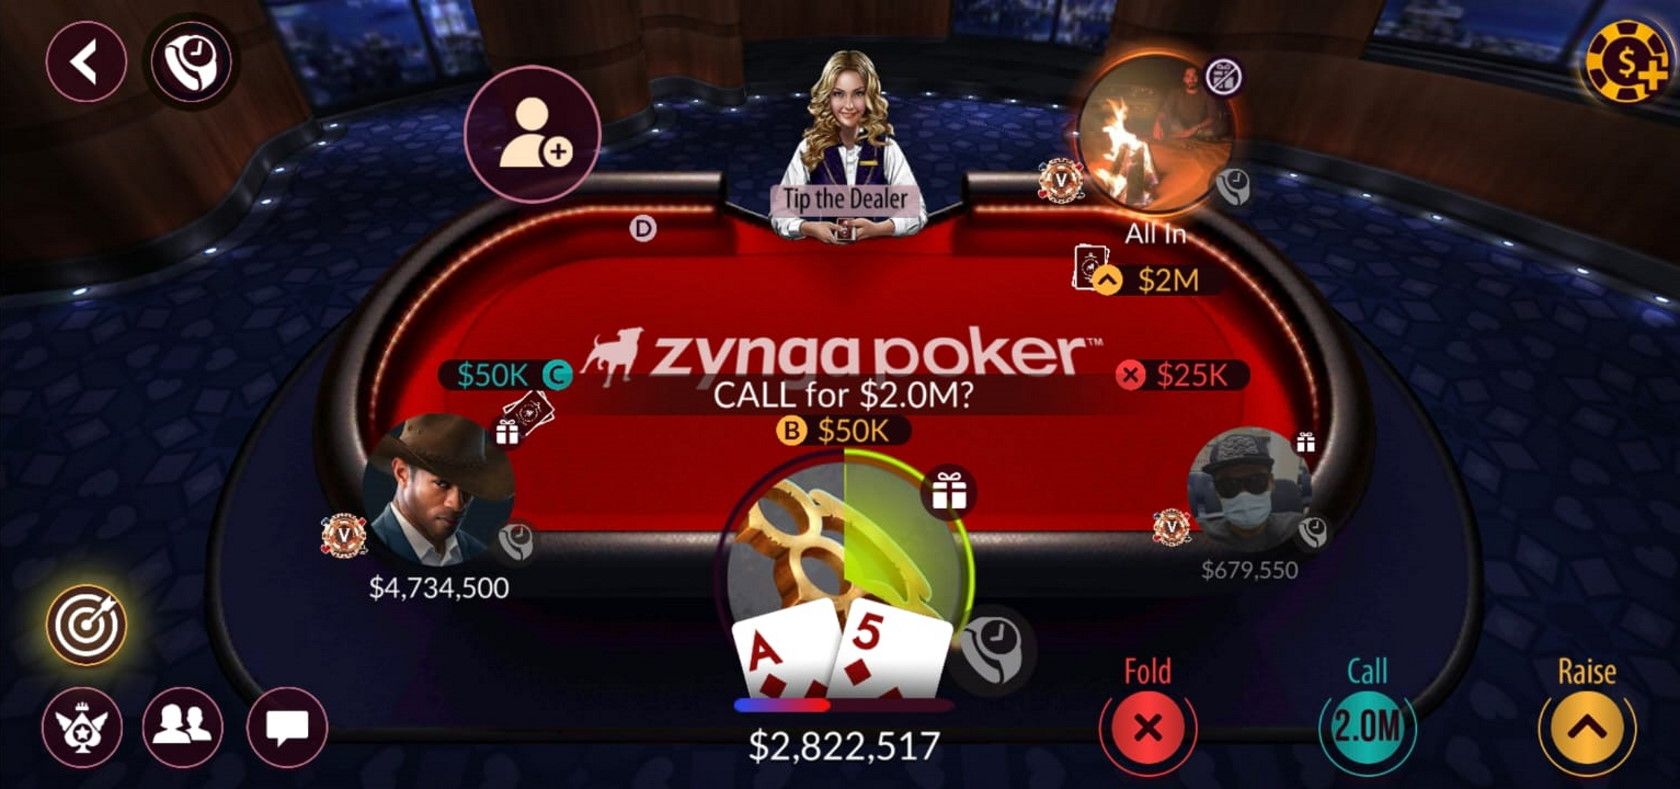 Zynga poker Texas hold'em mobile game